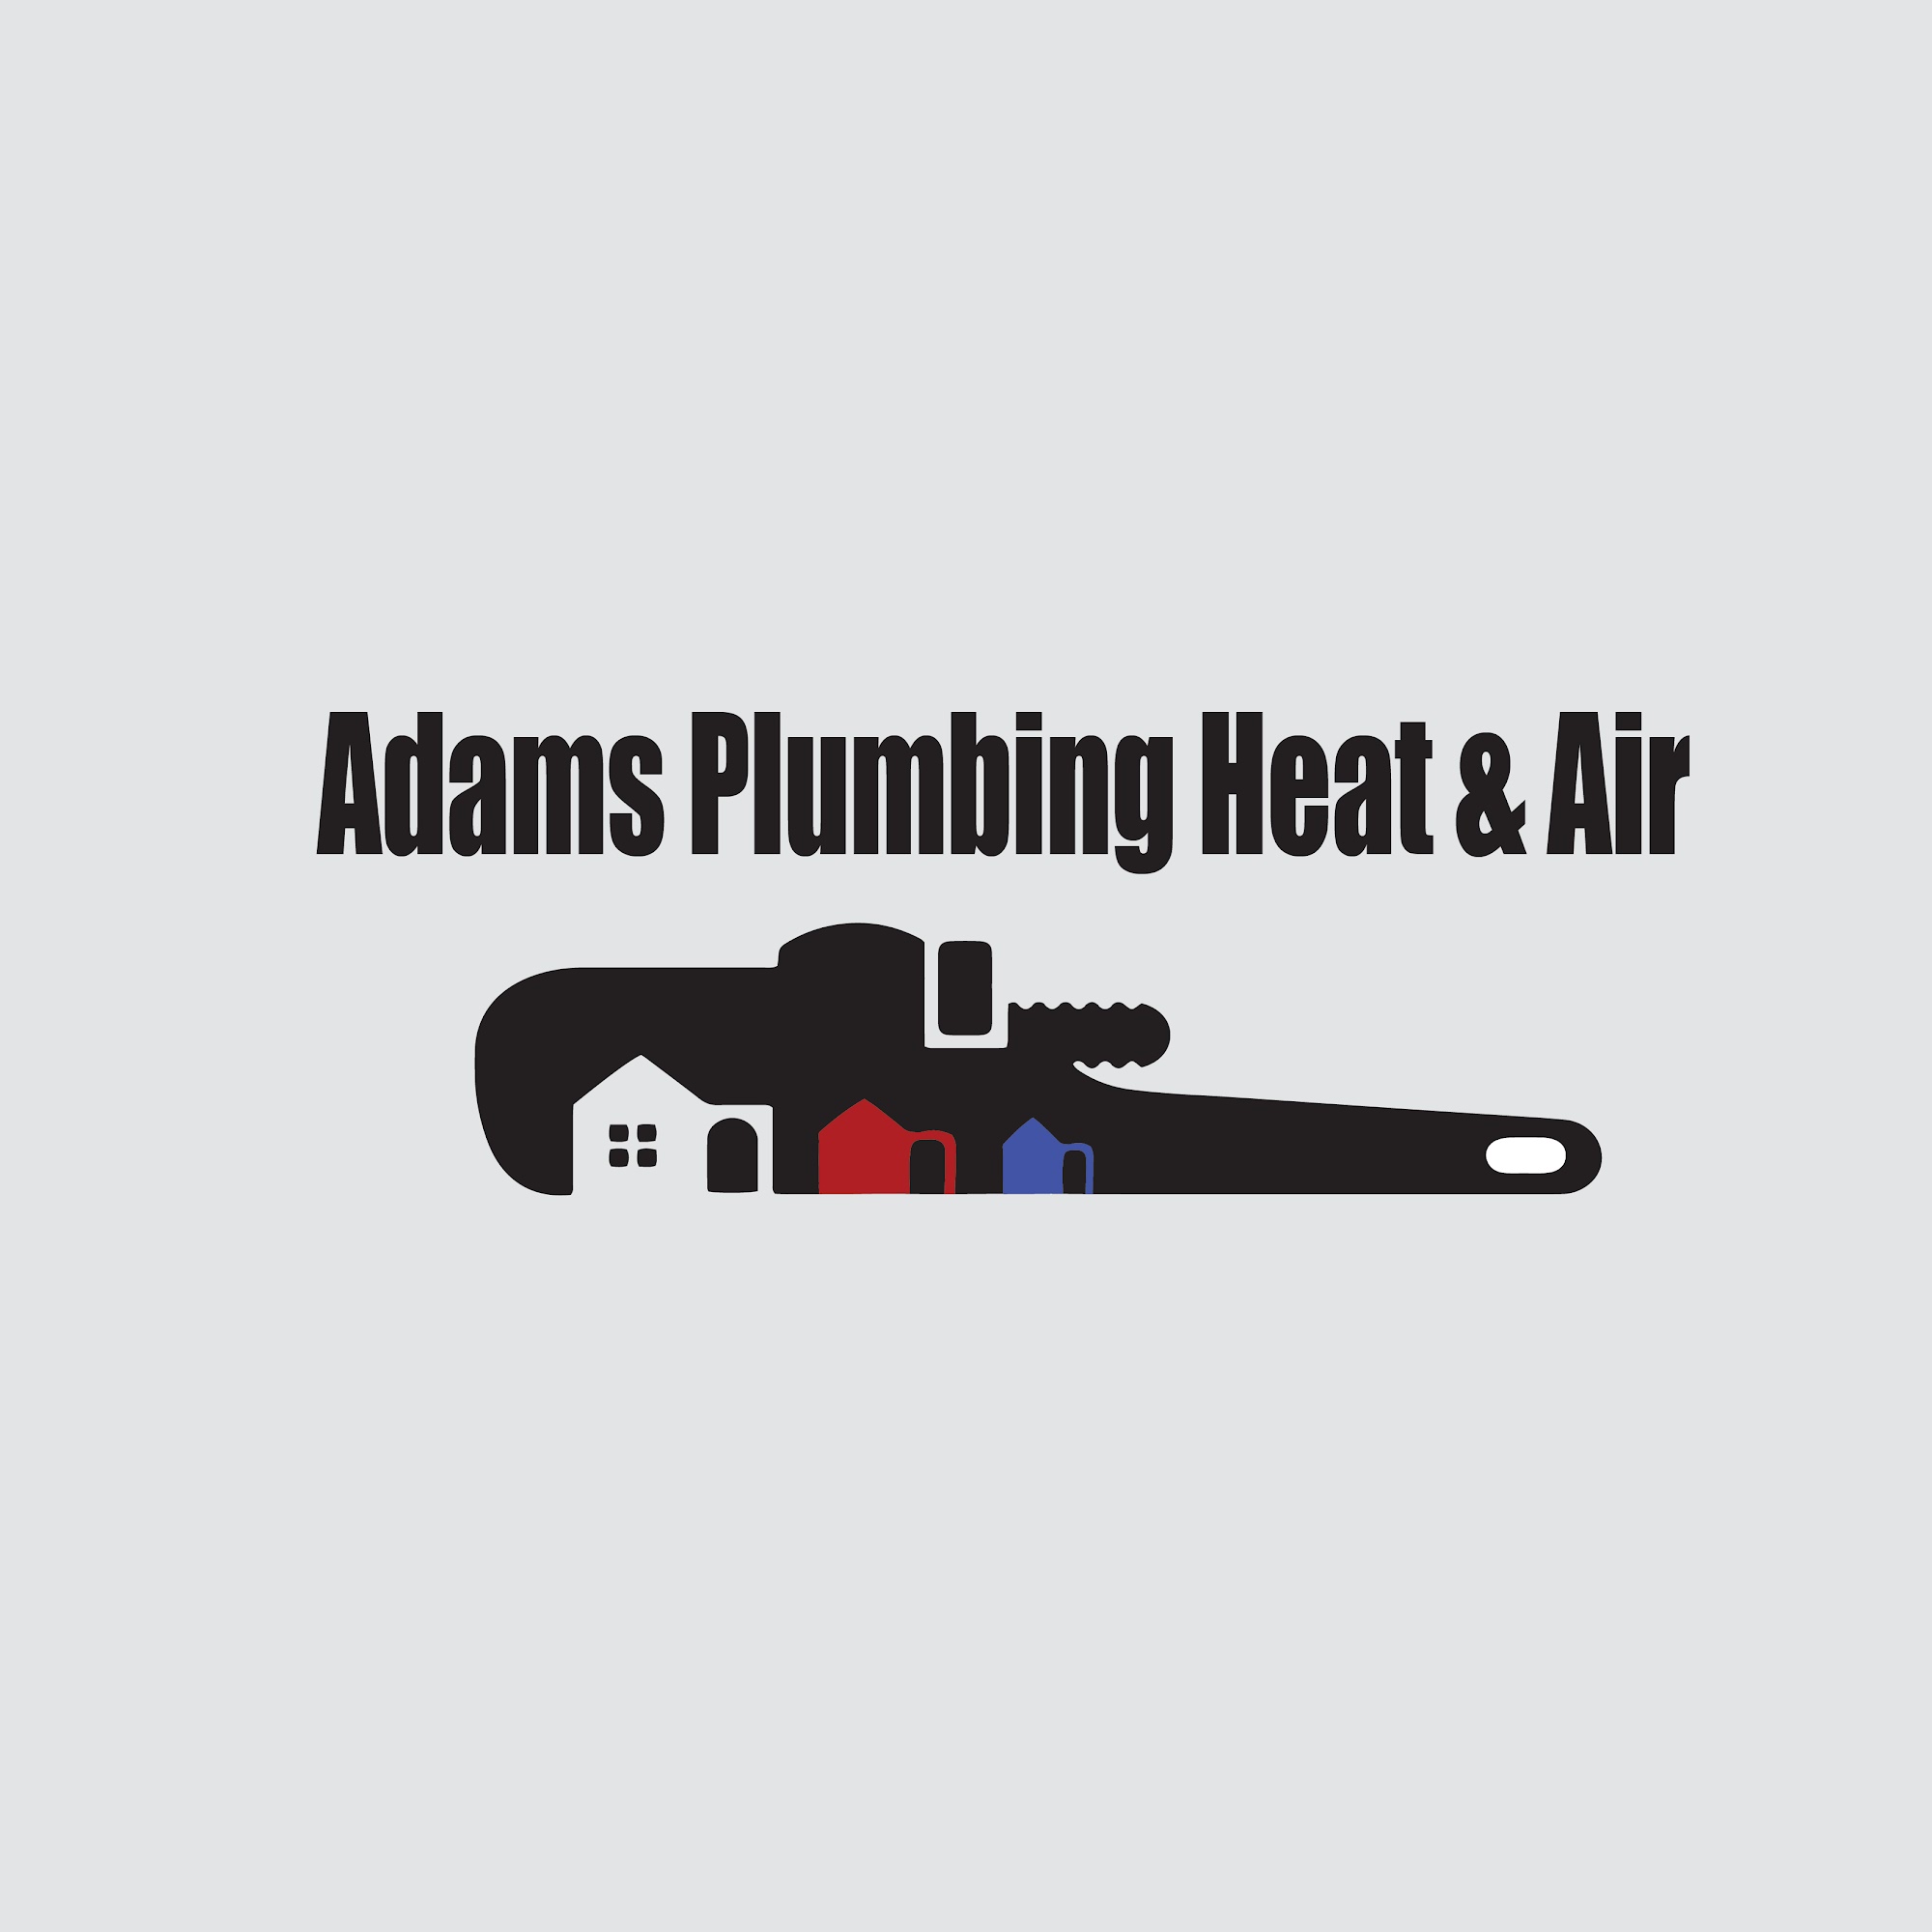 Adam's Plumbing Heat & Air Co.